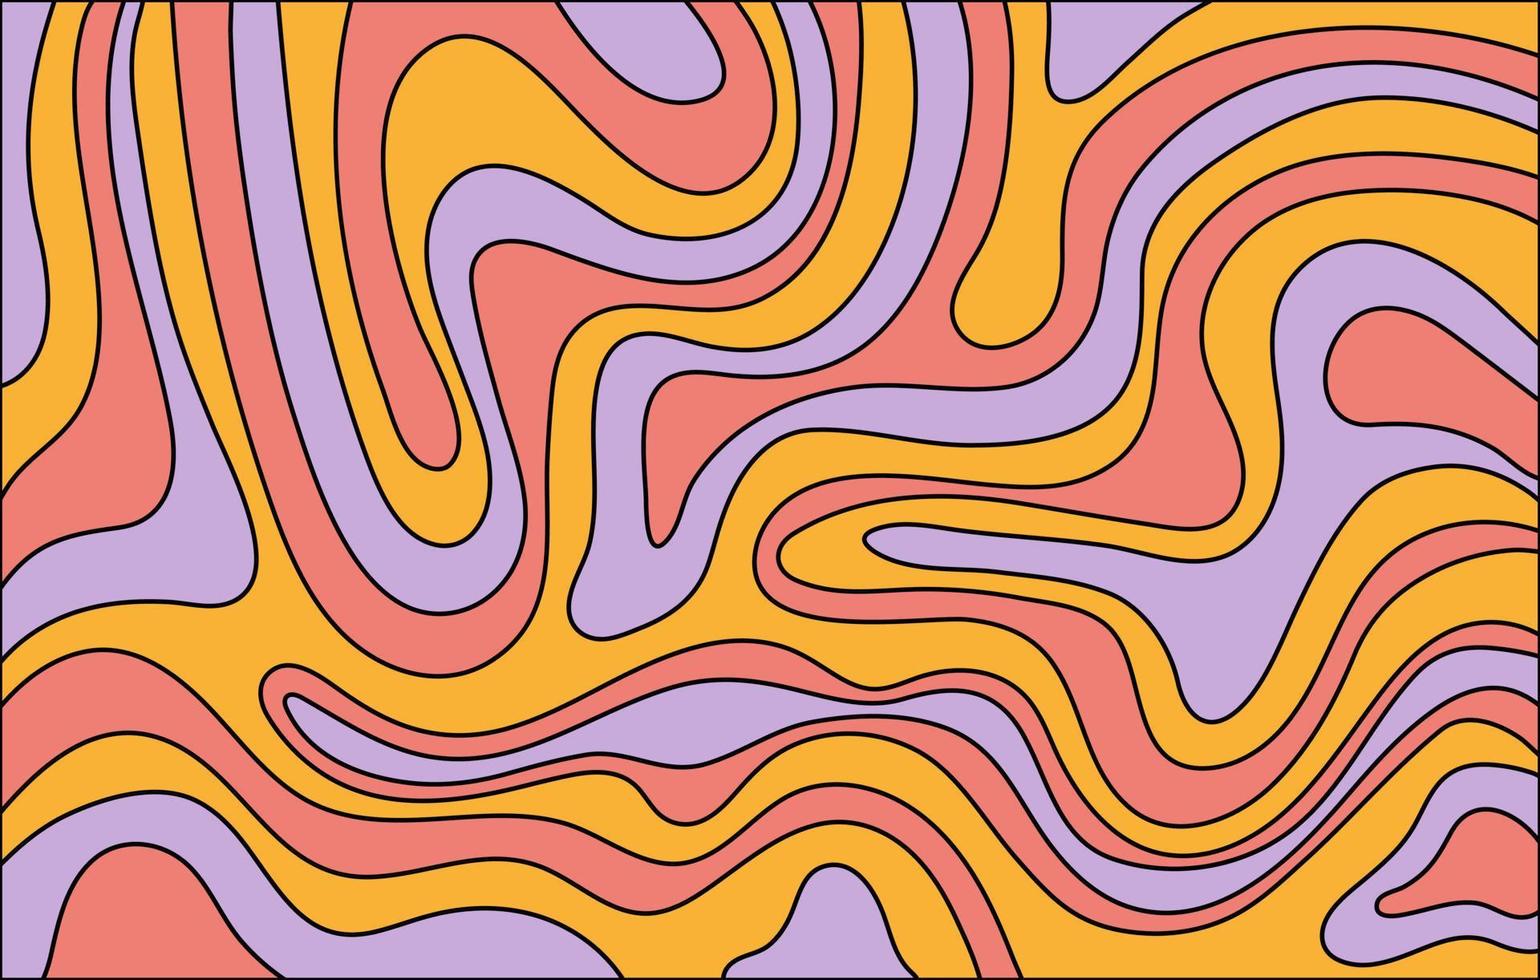 abstrakt horisontell bakgrund med färgglada vågor. trendig vektorillustration i retrostil 60-, 70-tal. vektor